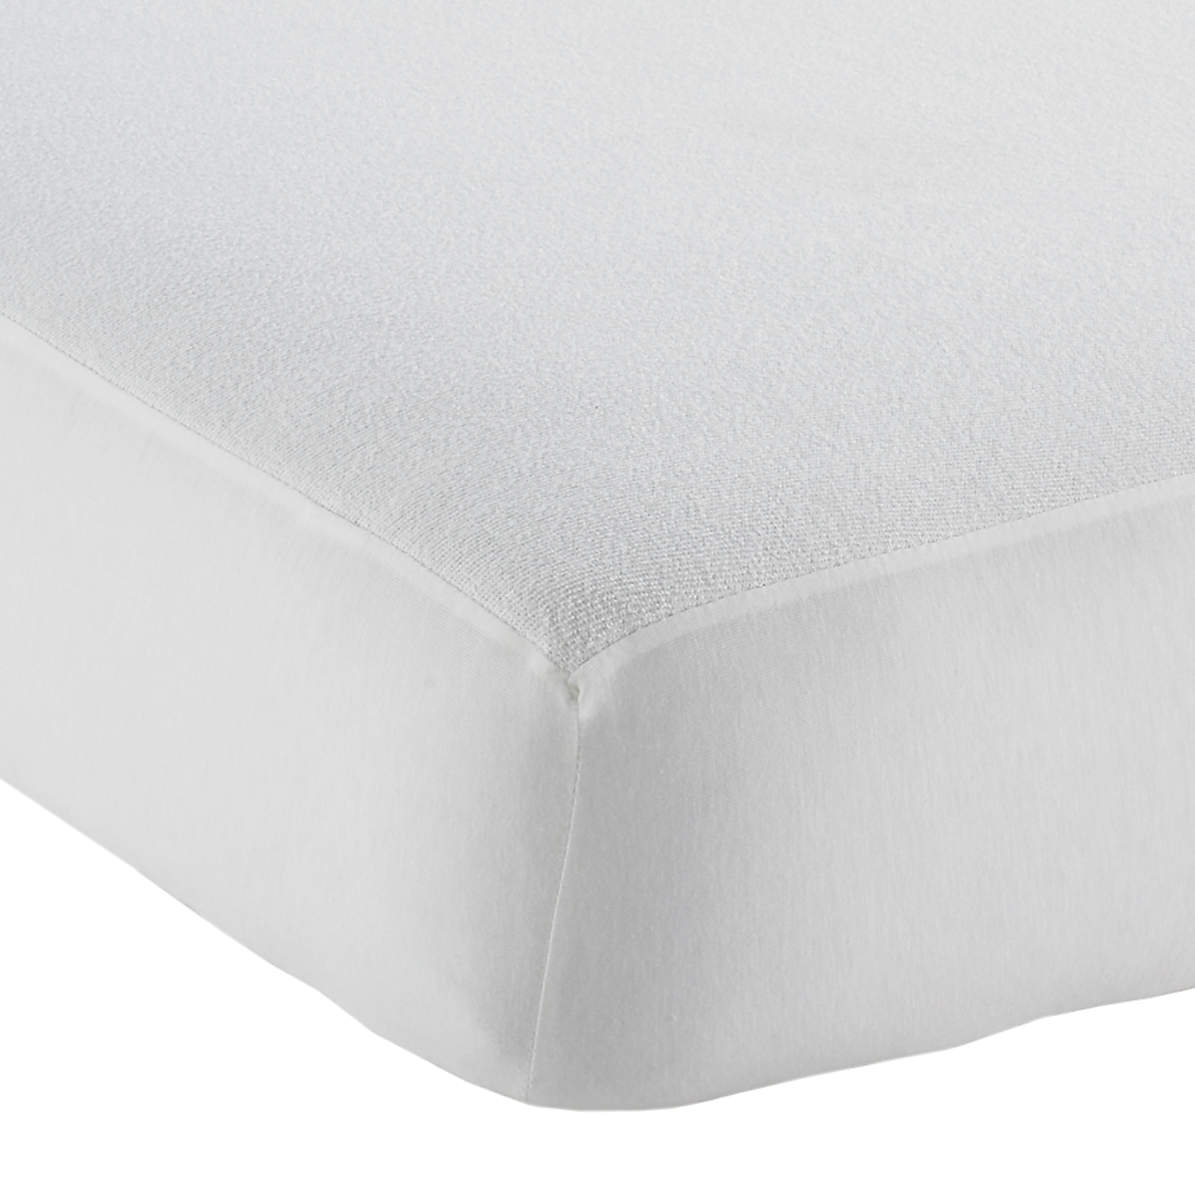 waterproof crib mattress pads